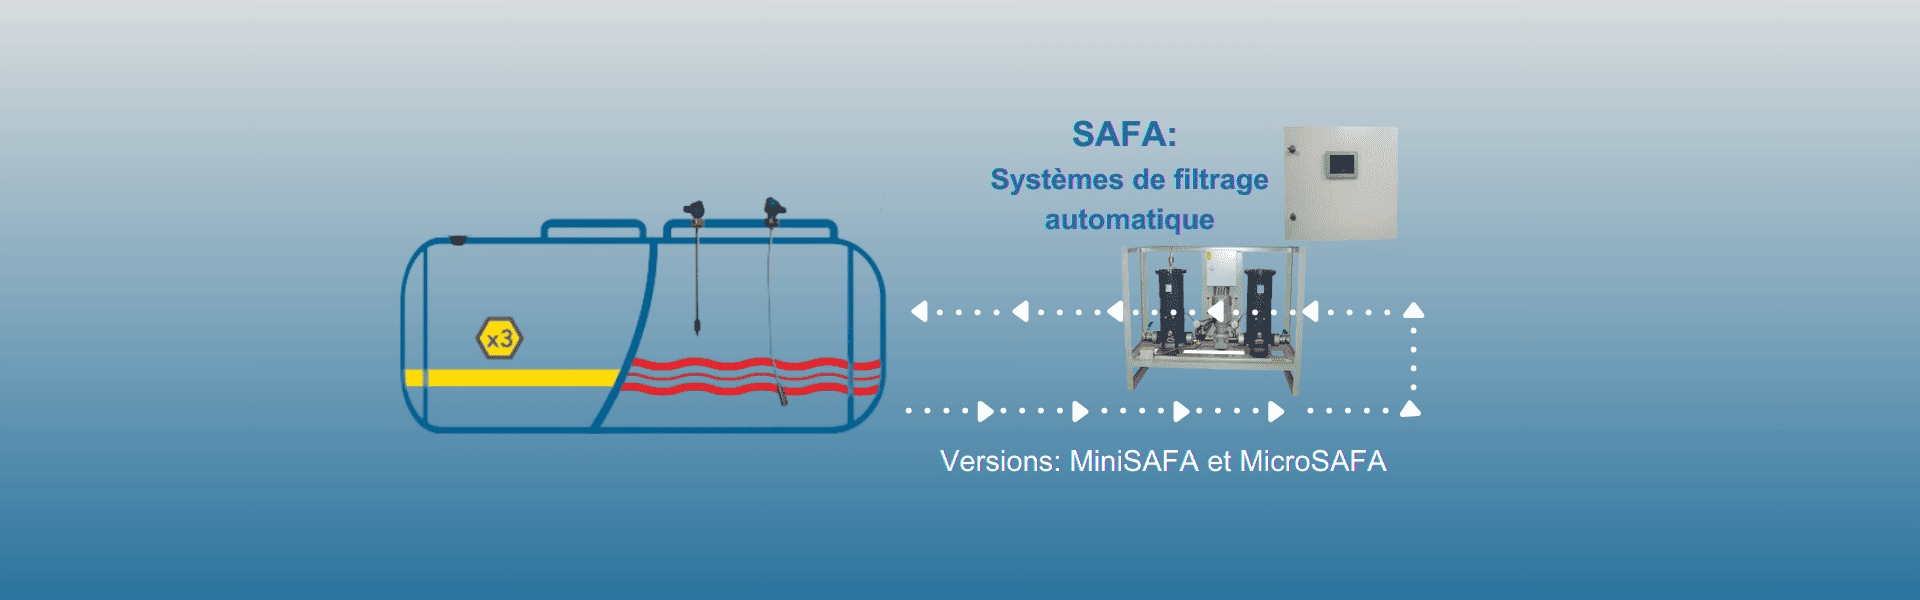 Systèmes de filtrage et polissage automatique: SAFA, MiniSAFA et MicroSAFA